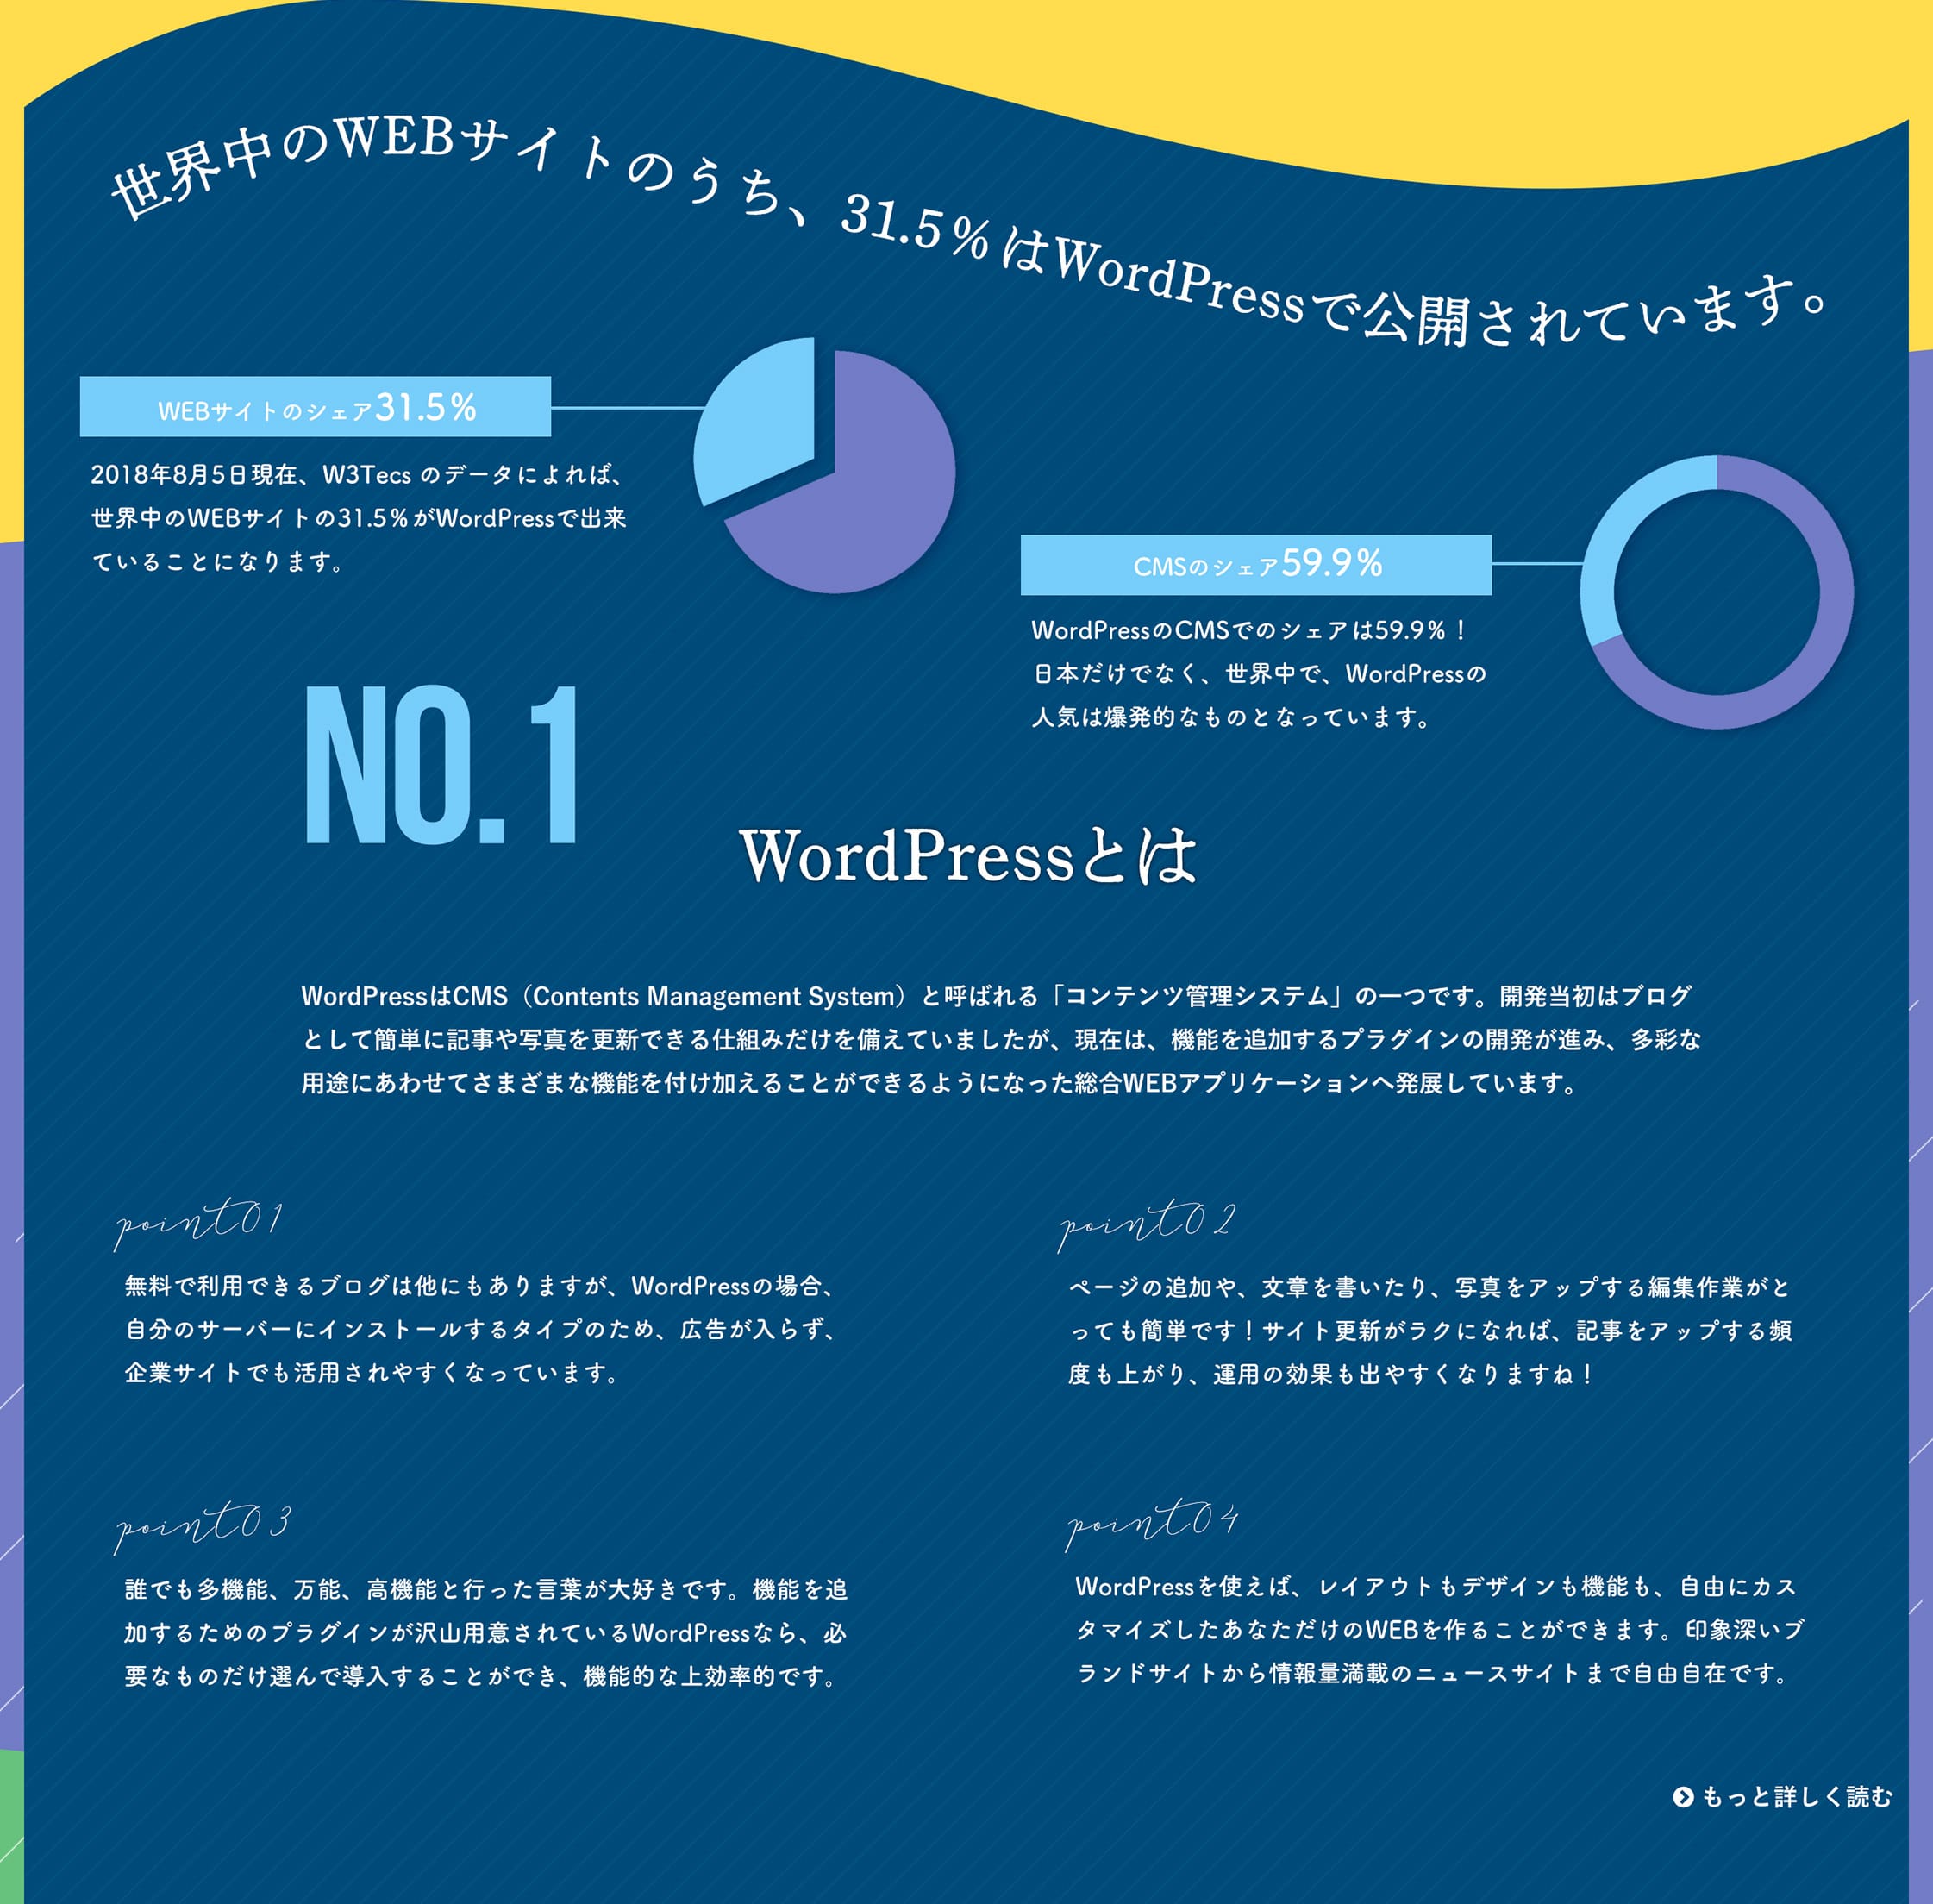 WordPressとは、無料で利用できるコンテンツ管理のアプリケーションです。ページの追加や写真のアップが簡単に出来、機能を追加するプラグインの種類も豊富です。WordPressを使えば、レイアウトもデザインも、機能もカスタマイズした、あなただけのオリジナルWEBサイトを手軽に作成することができます。日本語のWordPressのインストールは、WordPressの日本語ローカルサイトより、最新バージョンがダウンロード可能です。WordCampやWordBenchなどのイベント情報やカスタマイズ情報も豊富！